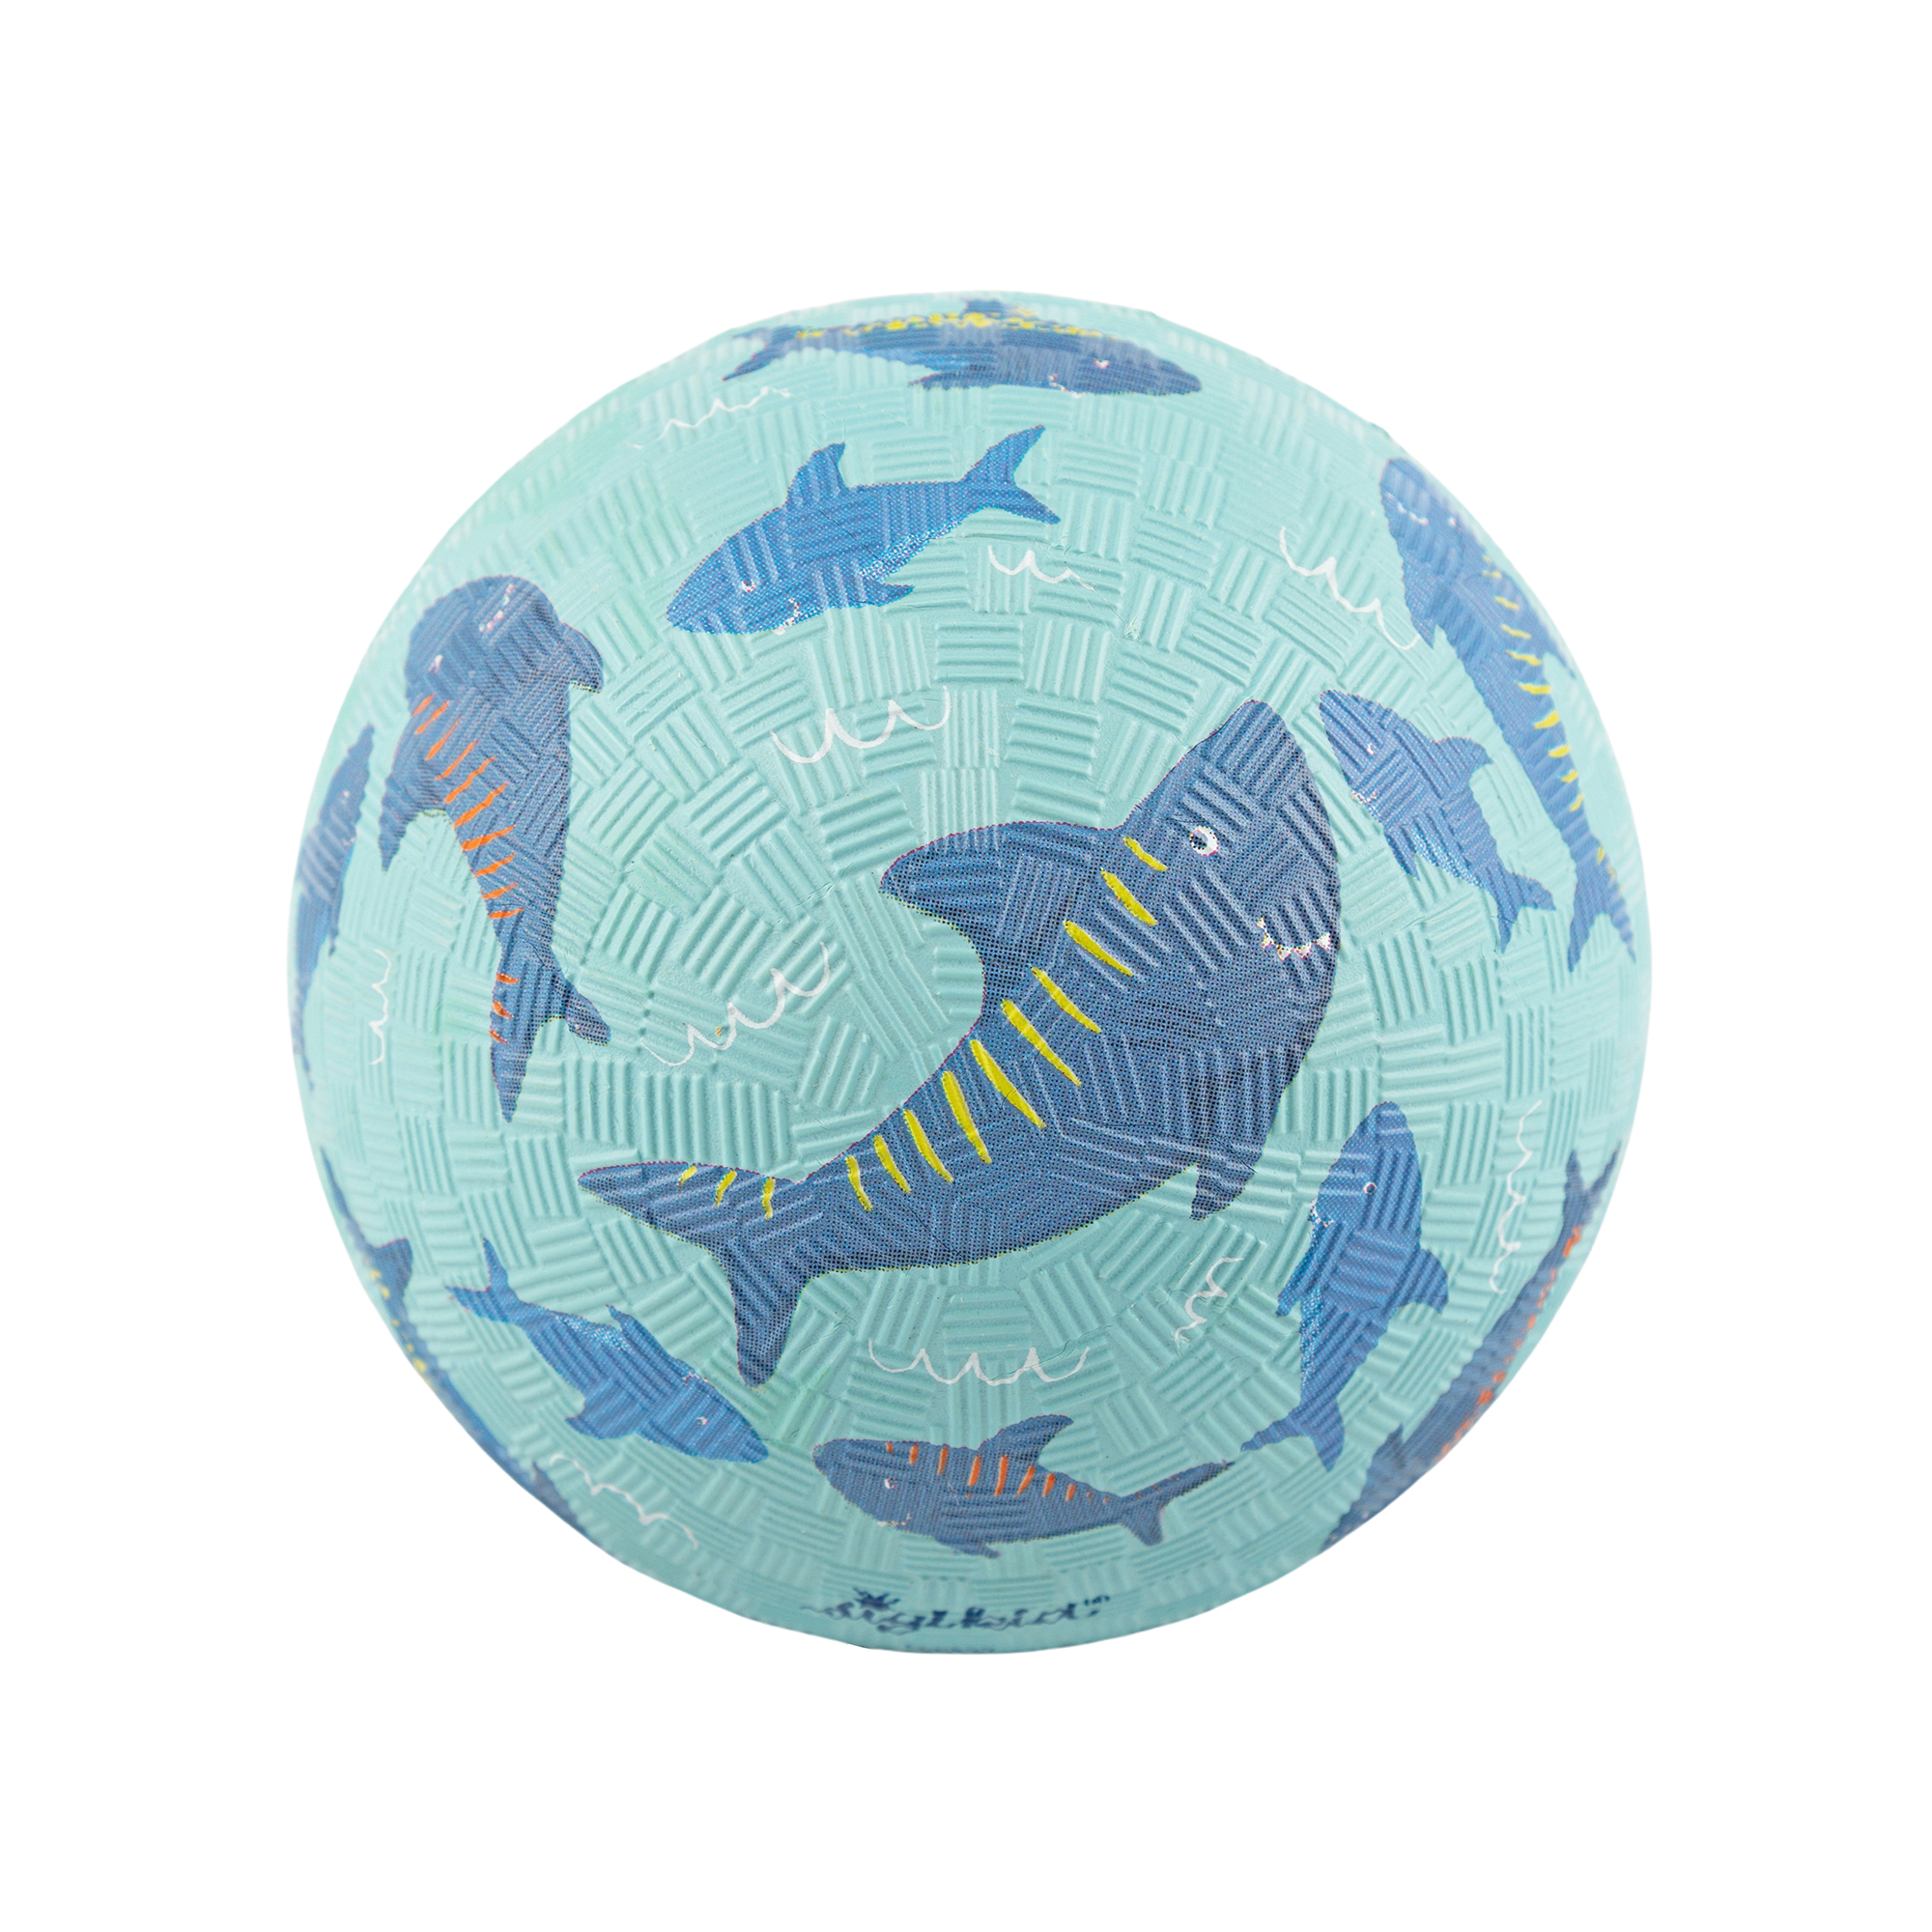 Rubber ball sharks, small size, light blue